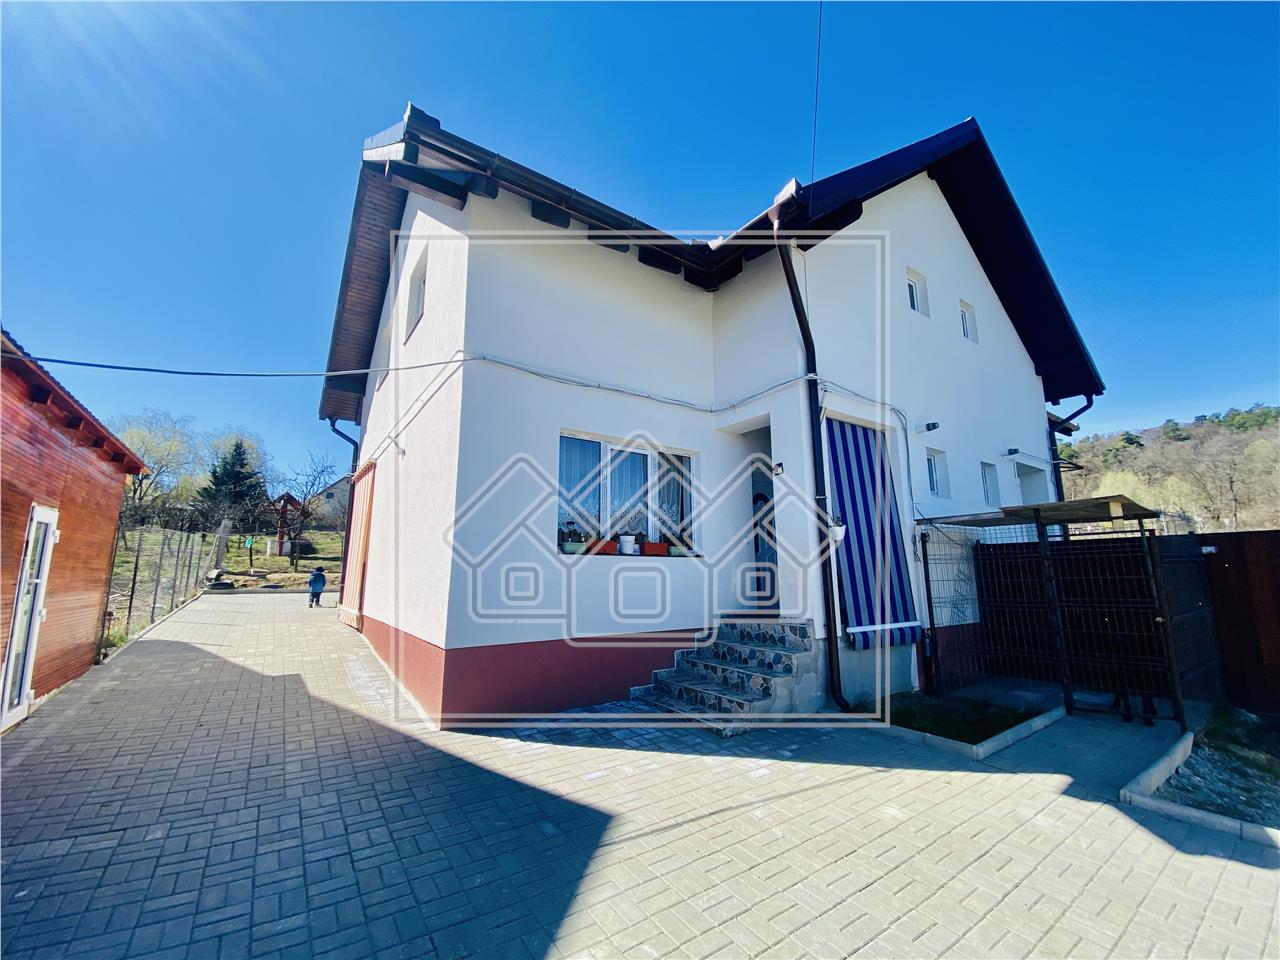 Casa de vanzare in Sibiu - tip duplex - 89 mp utili - Cisnadioara